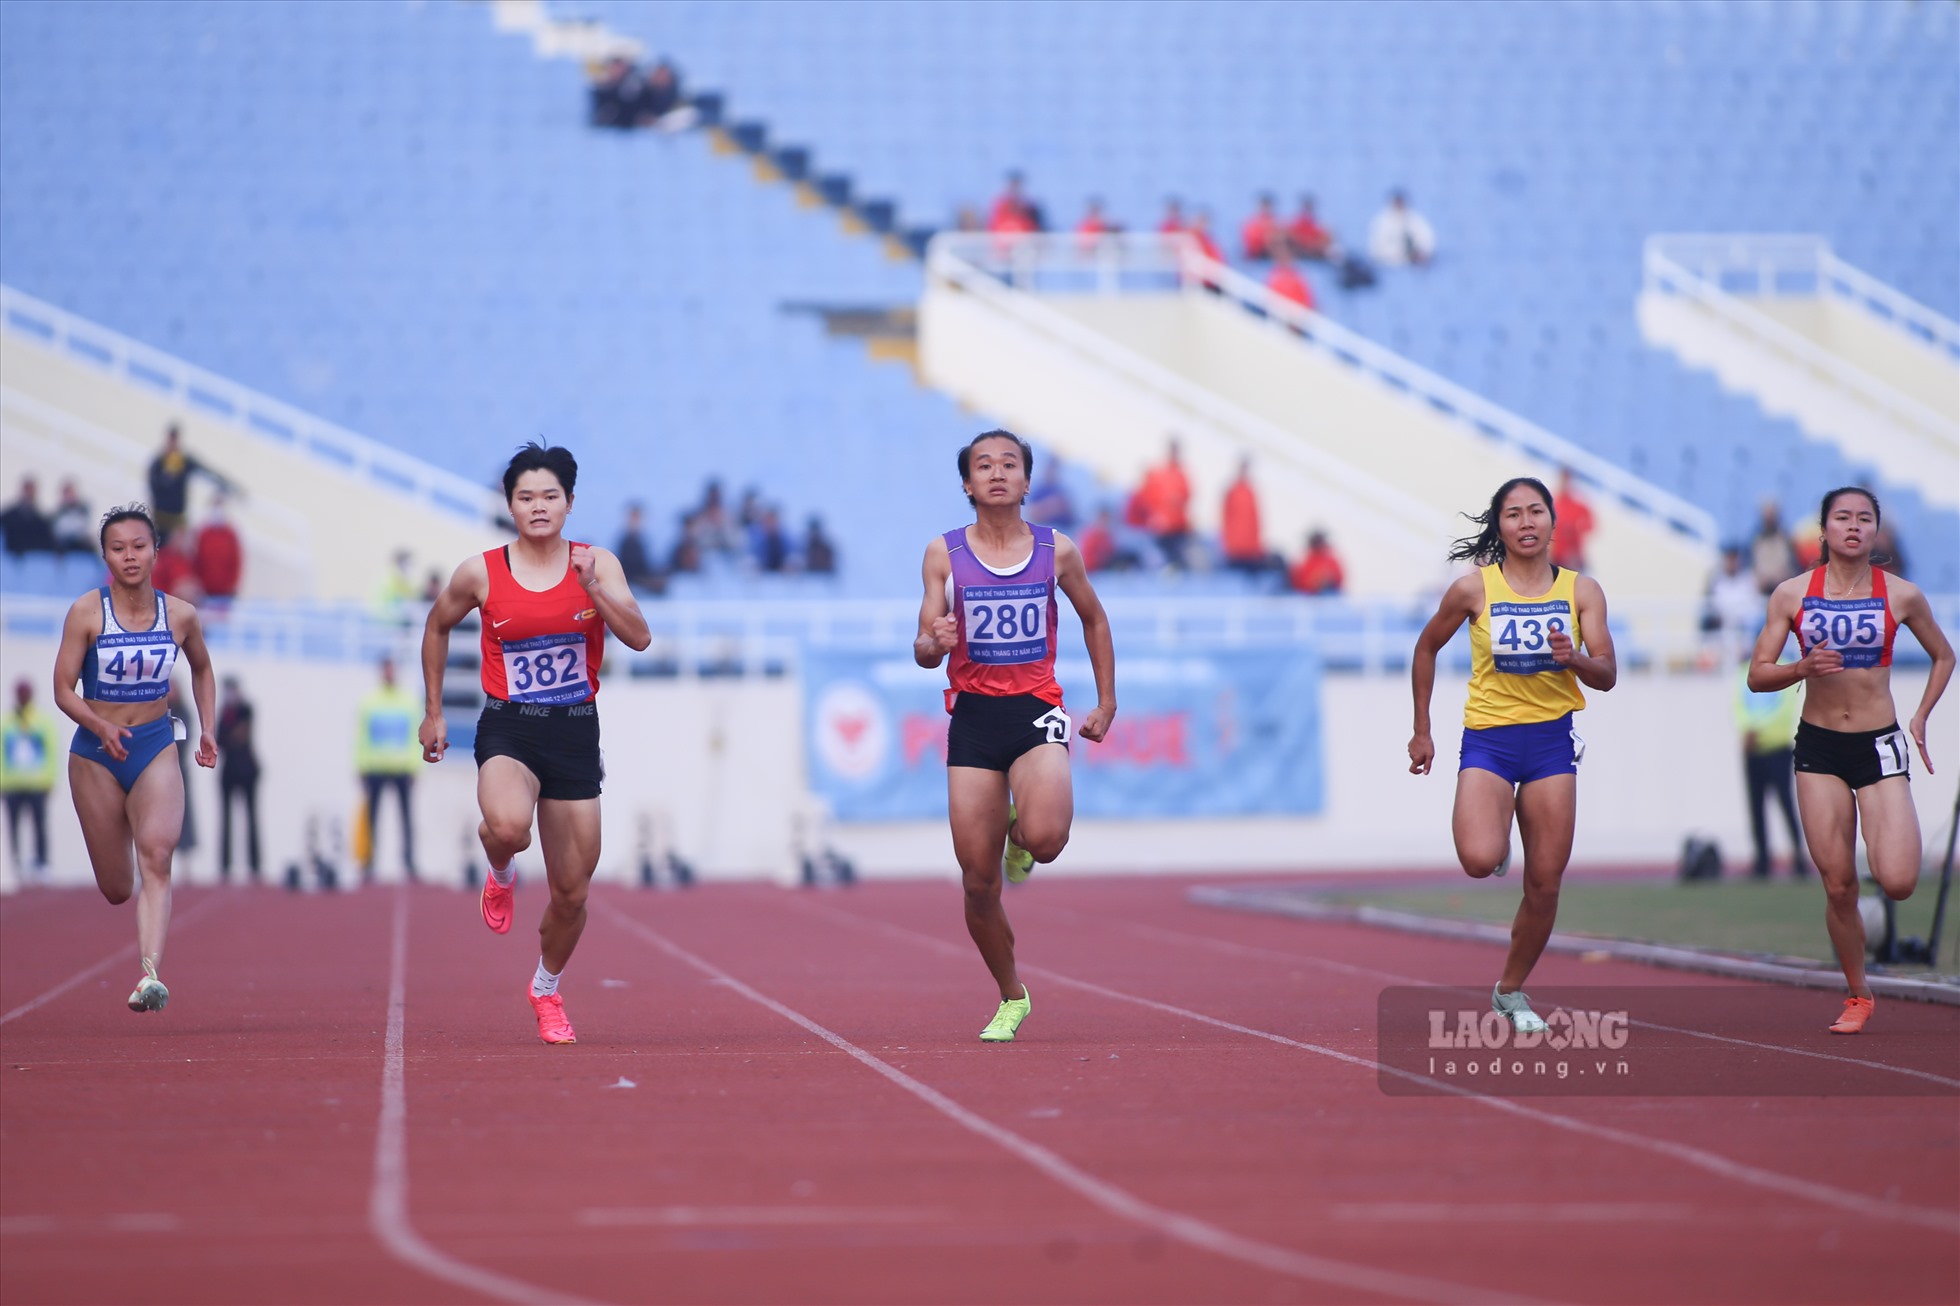 Ở nội dung 100m nữ, huy chương vàng thuộc về Trần Thị Nhi Yến (đoàn Long An) với thời gian 11 giây 75, tiếp sau là Hoàng Dư Ý (đoàn Quân đội) với thời gian 11 giây 81 và xếp thứ 3 là Kha Thanh Trúc (Nghệ An) đạt thành tích 11 giây 87.